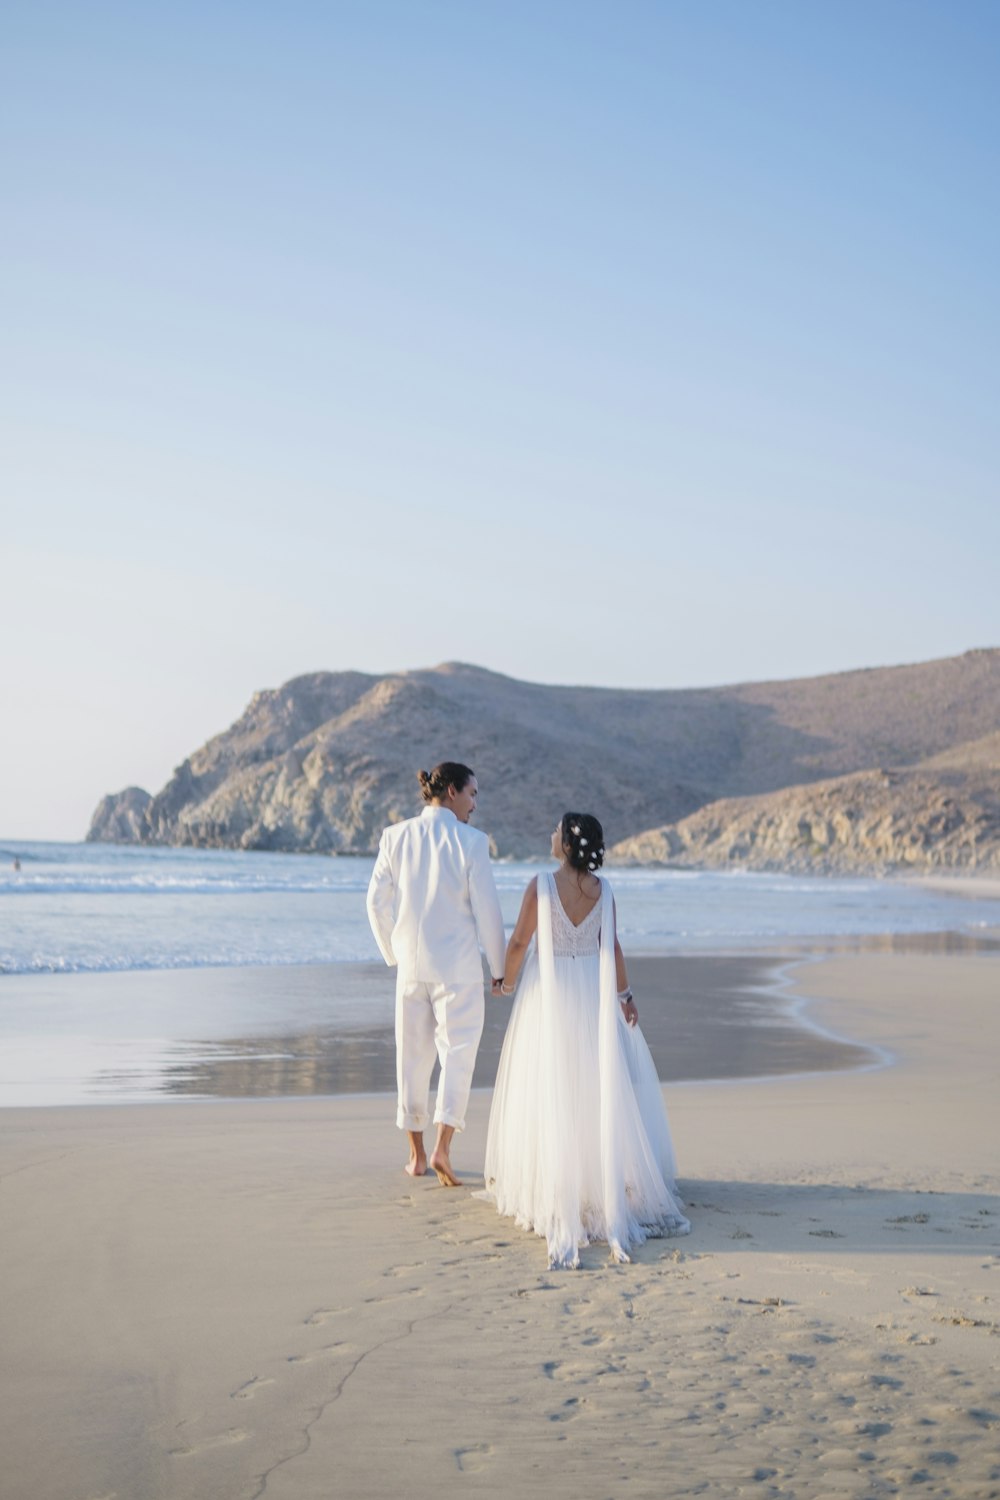 Ein Mann und eine Frau in Hochzeitskleidung am Strand